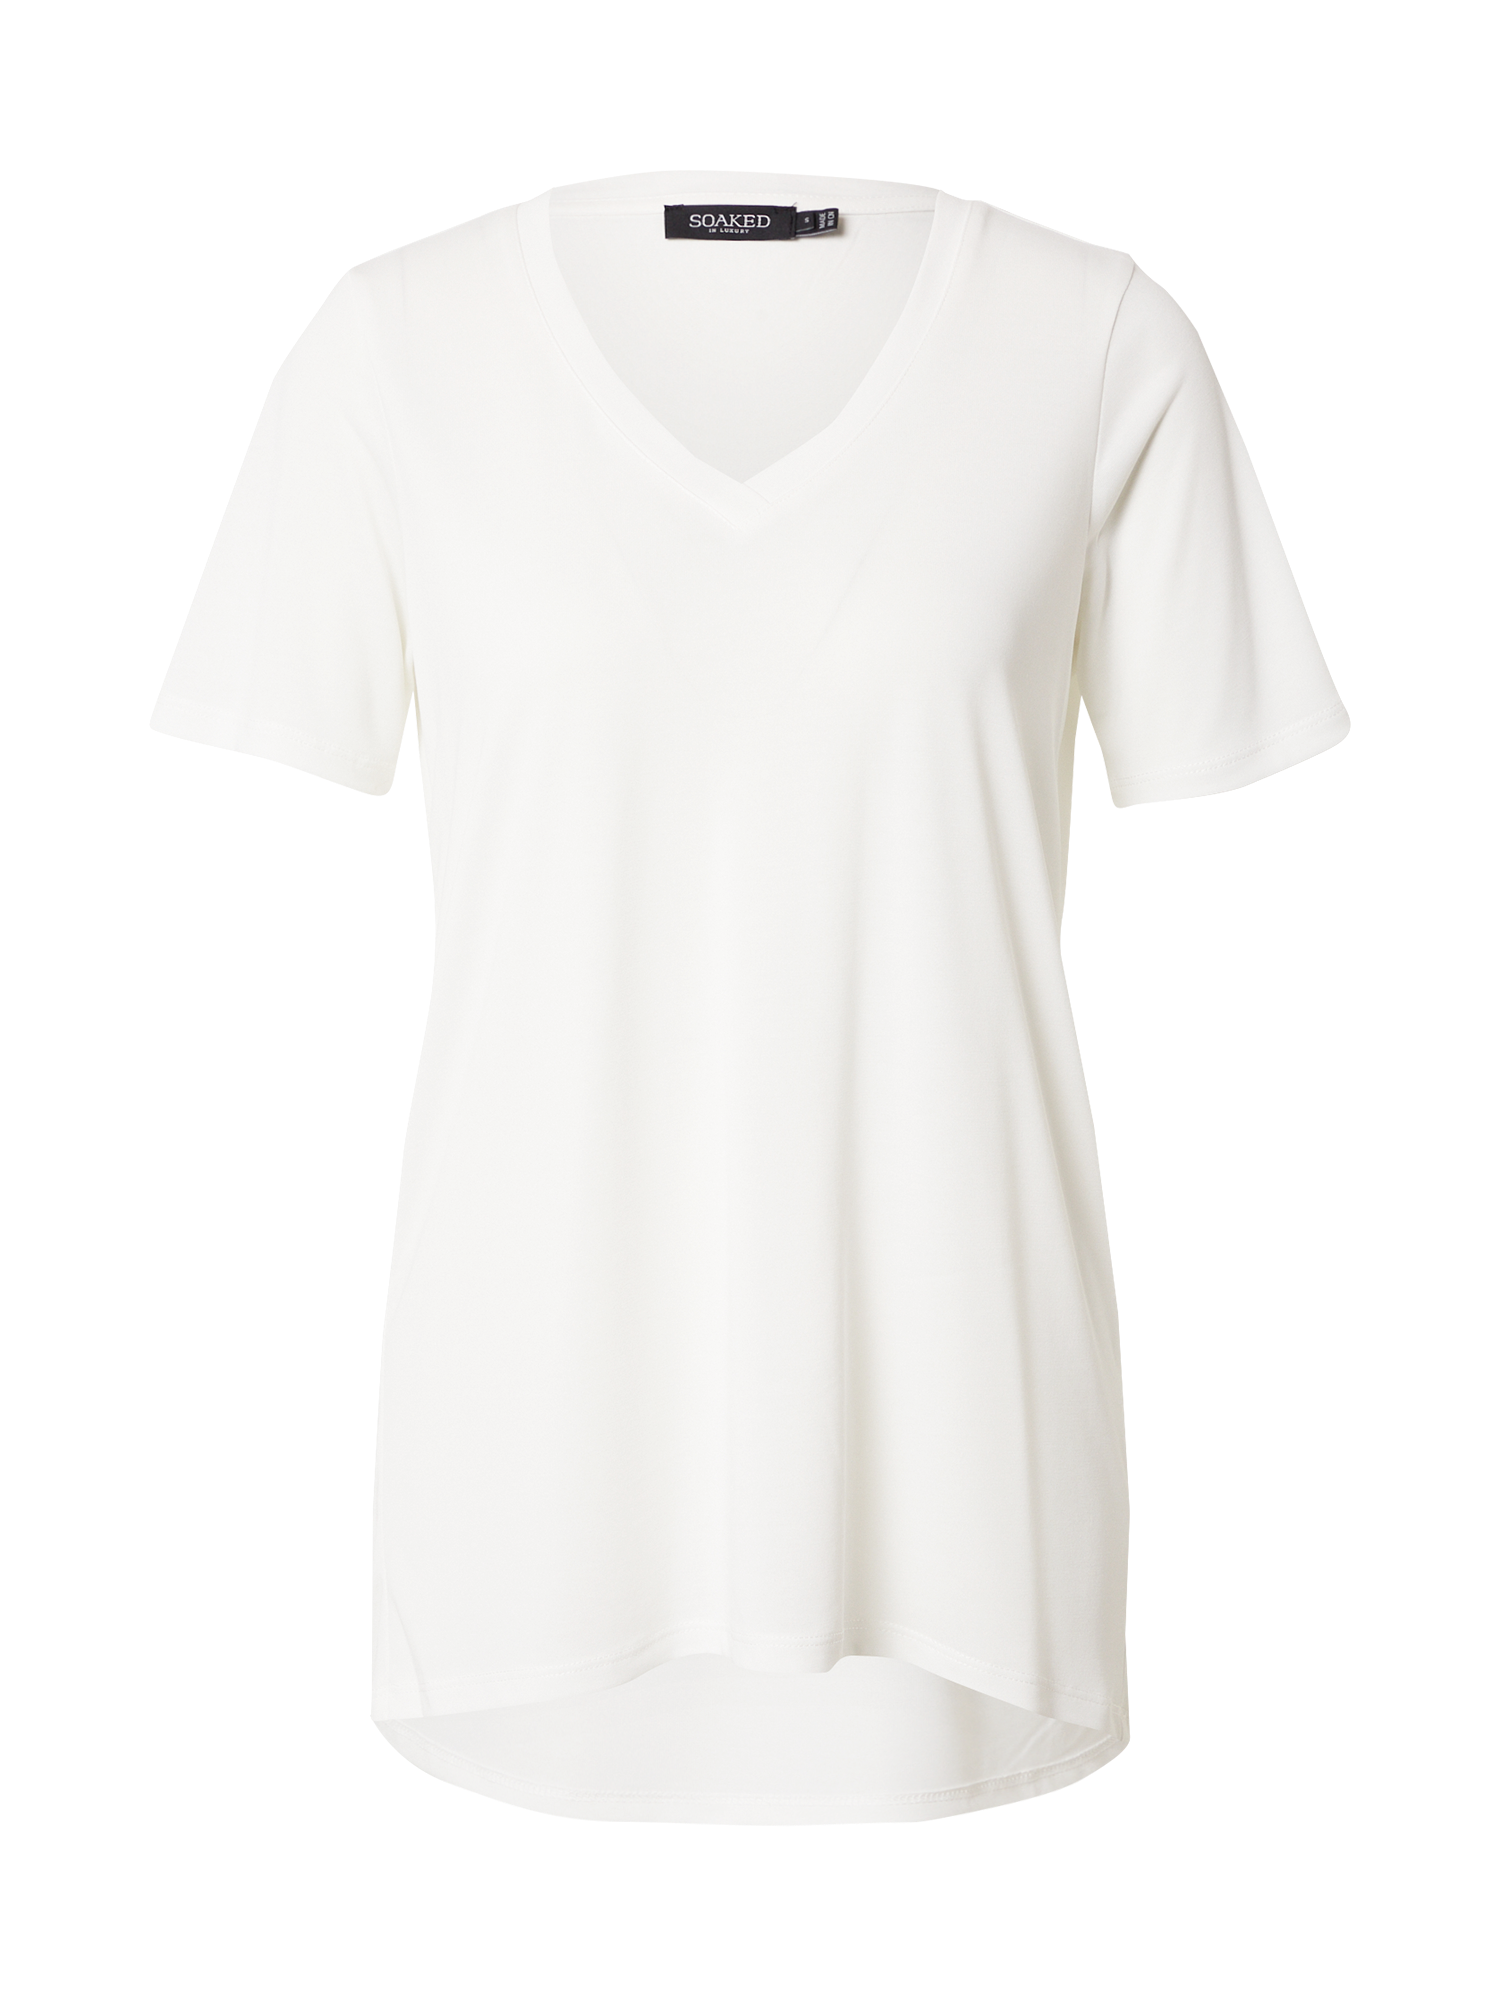 Odzież Koszulki & topy SOAKED IN LUXURY Koszulka Columbine w kolorze Białym 